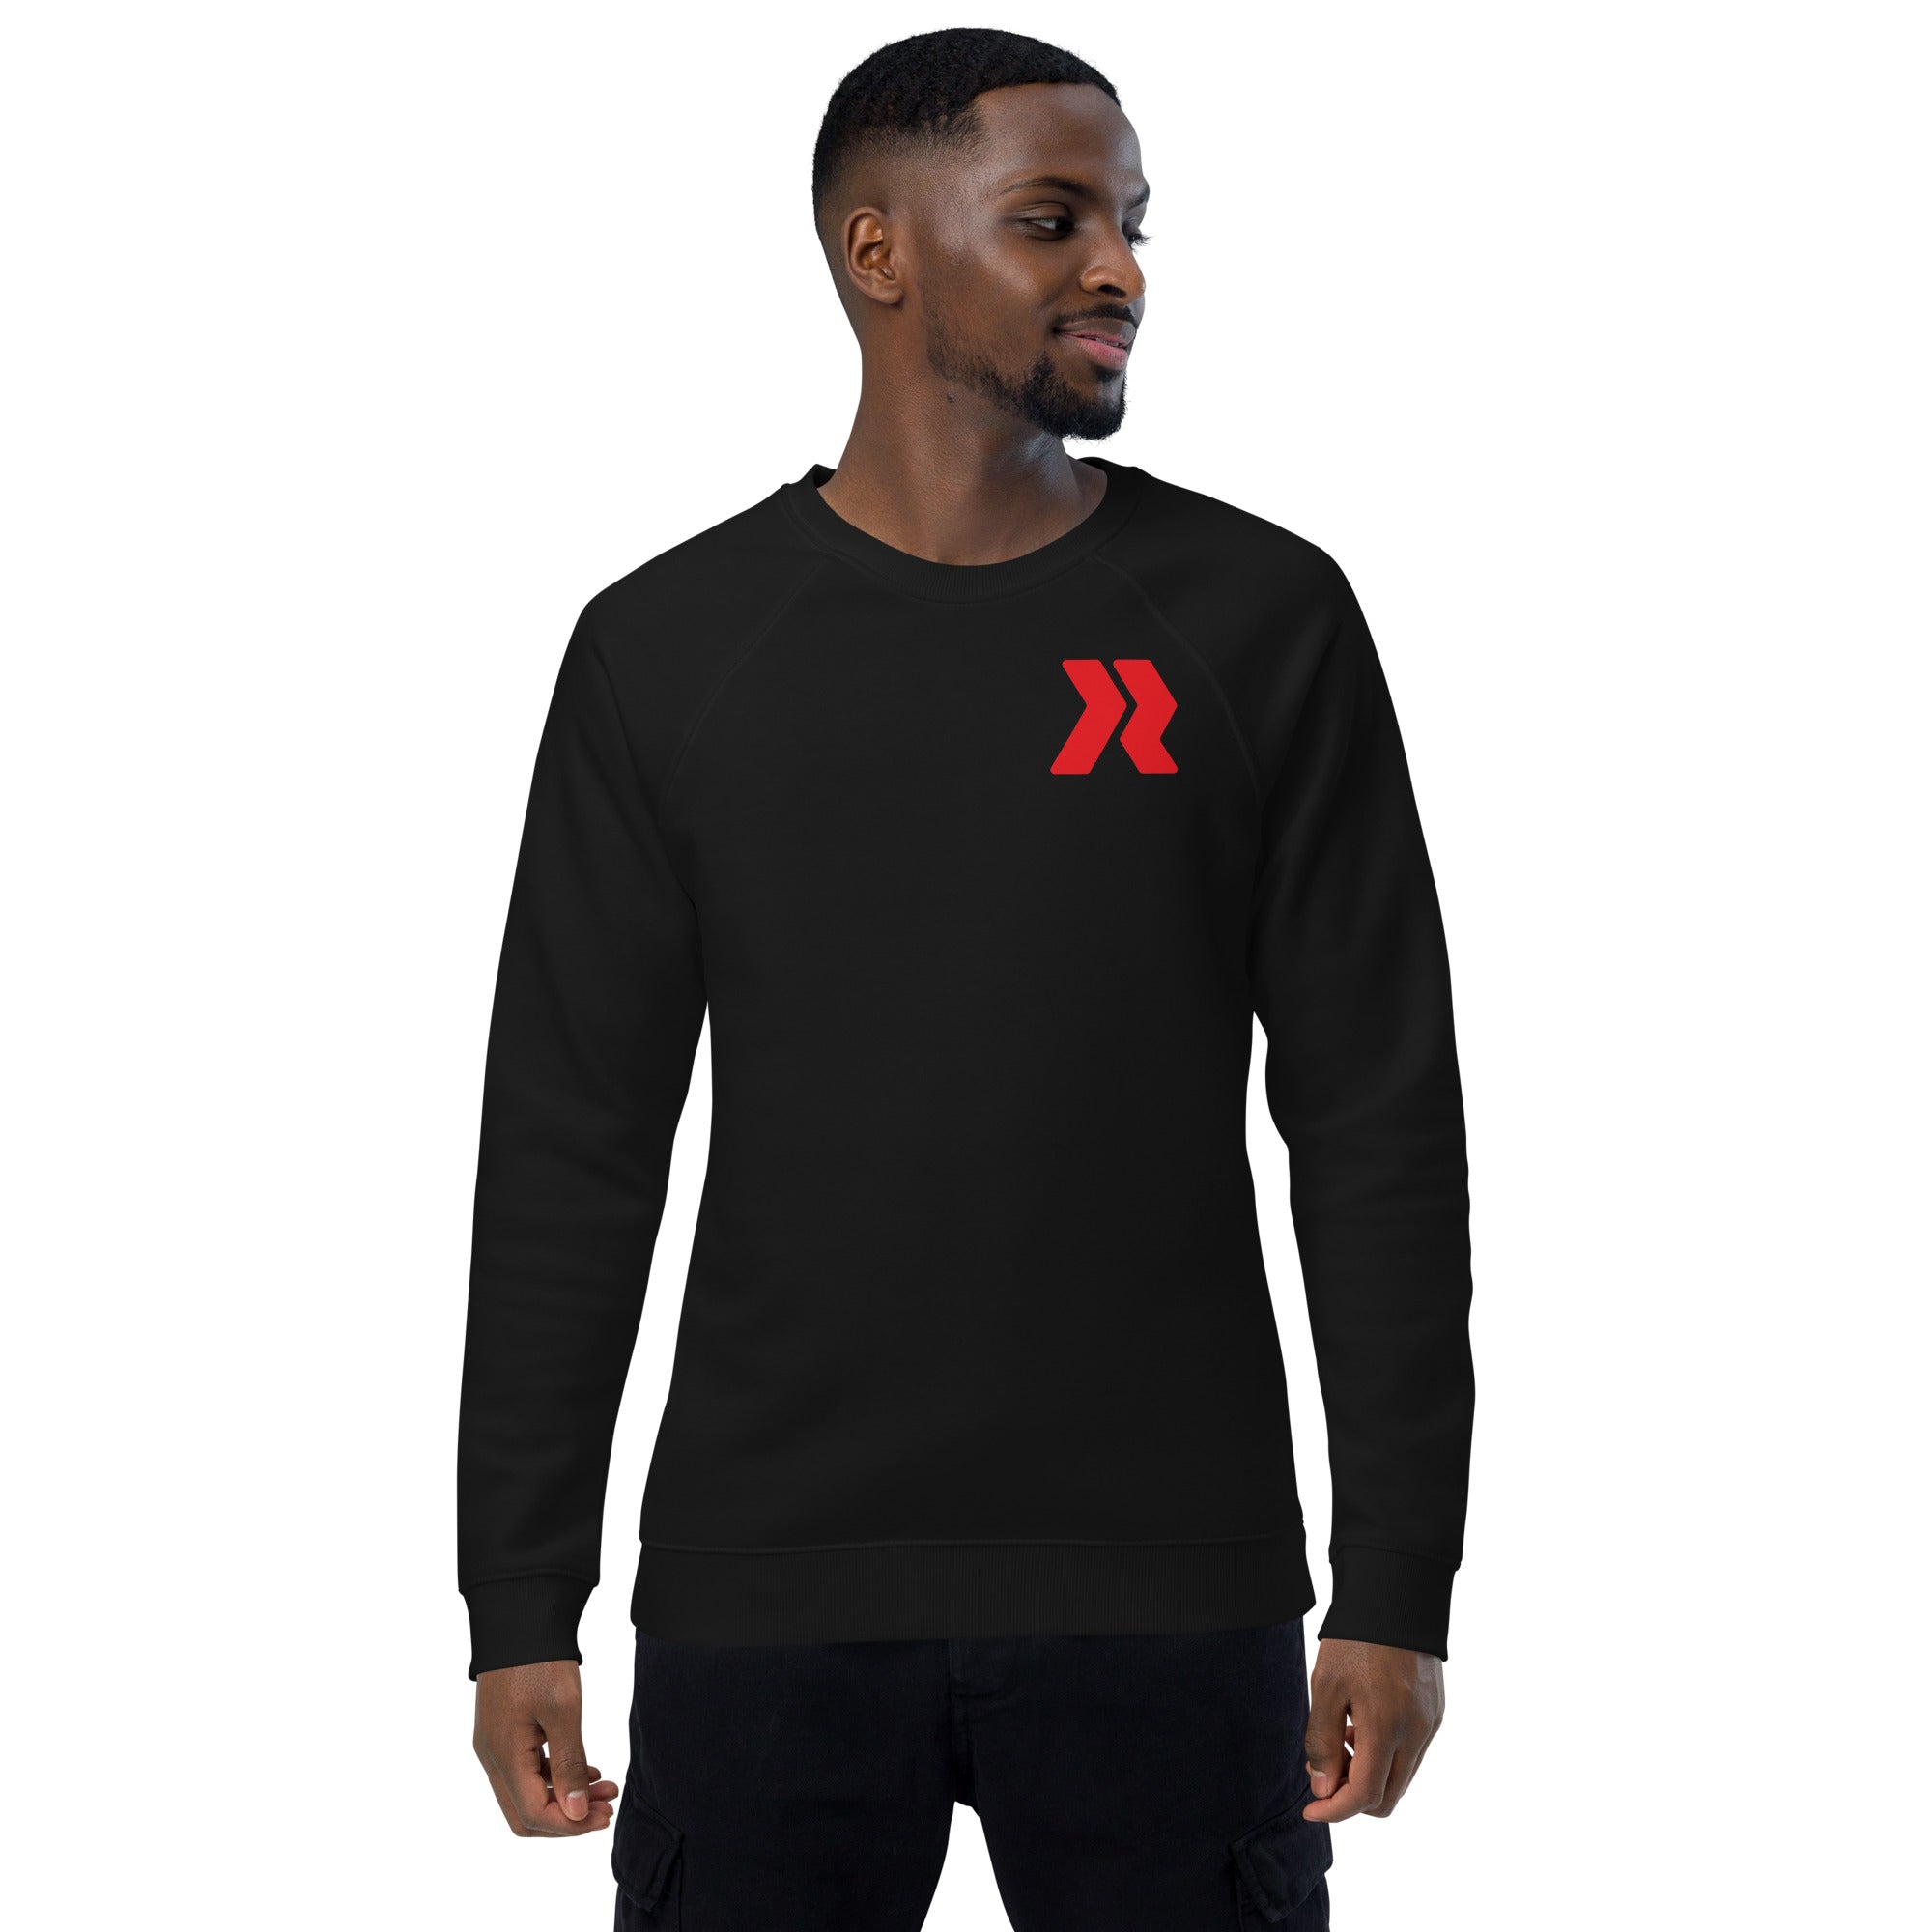 Idlewild Logo R - R/W - Black Unisex organic raglan sweatshirt